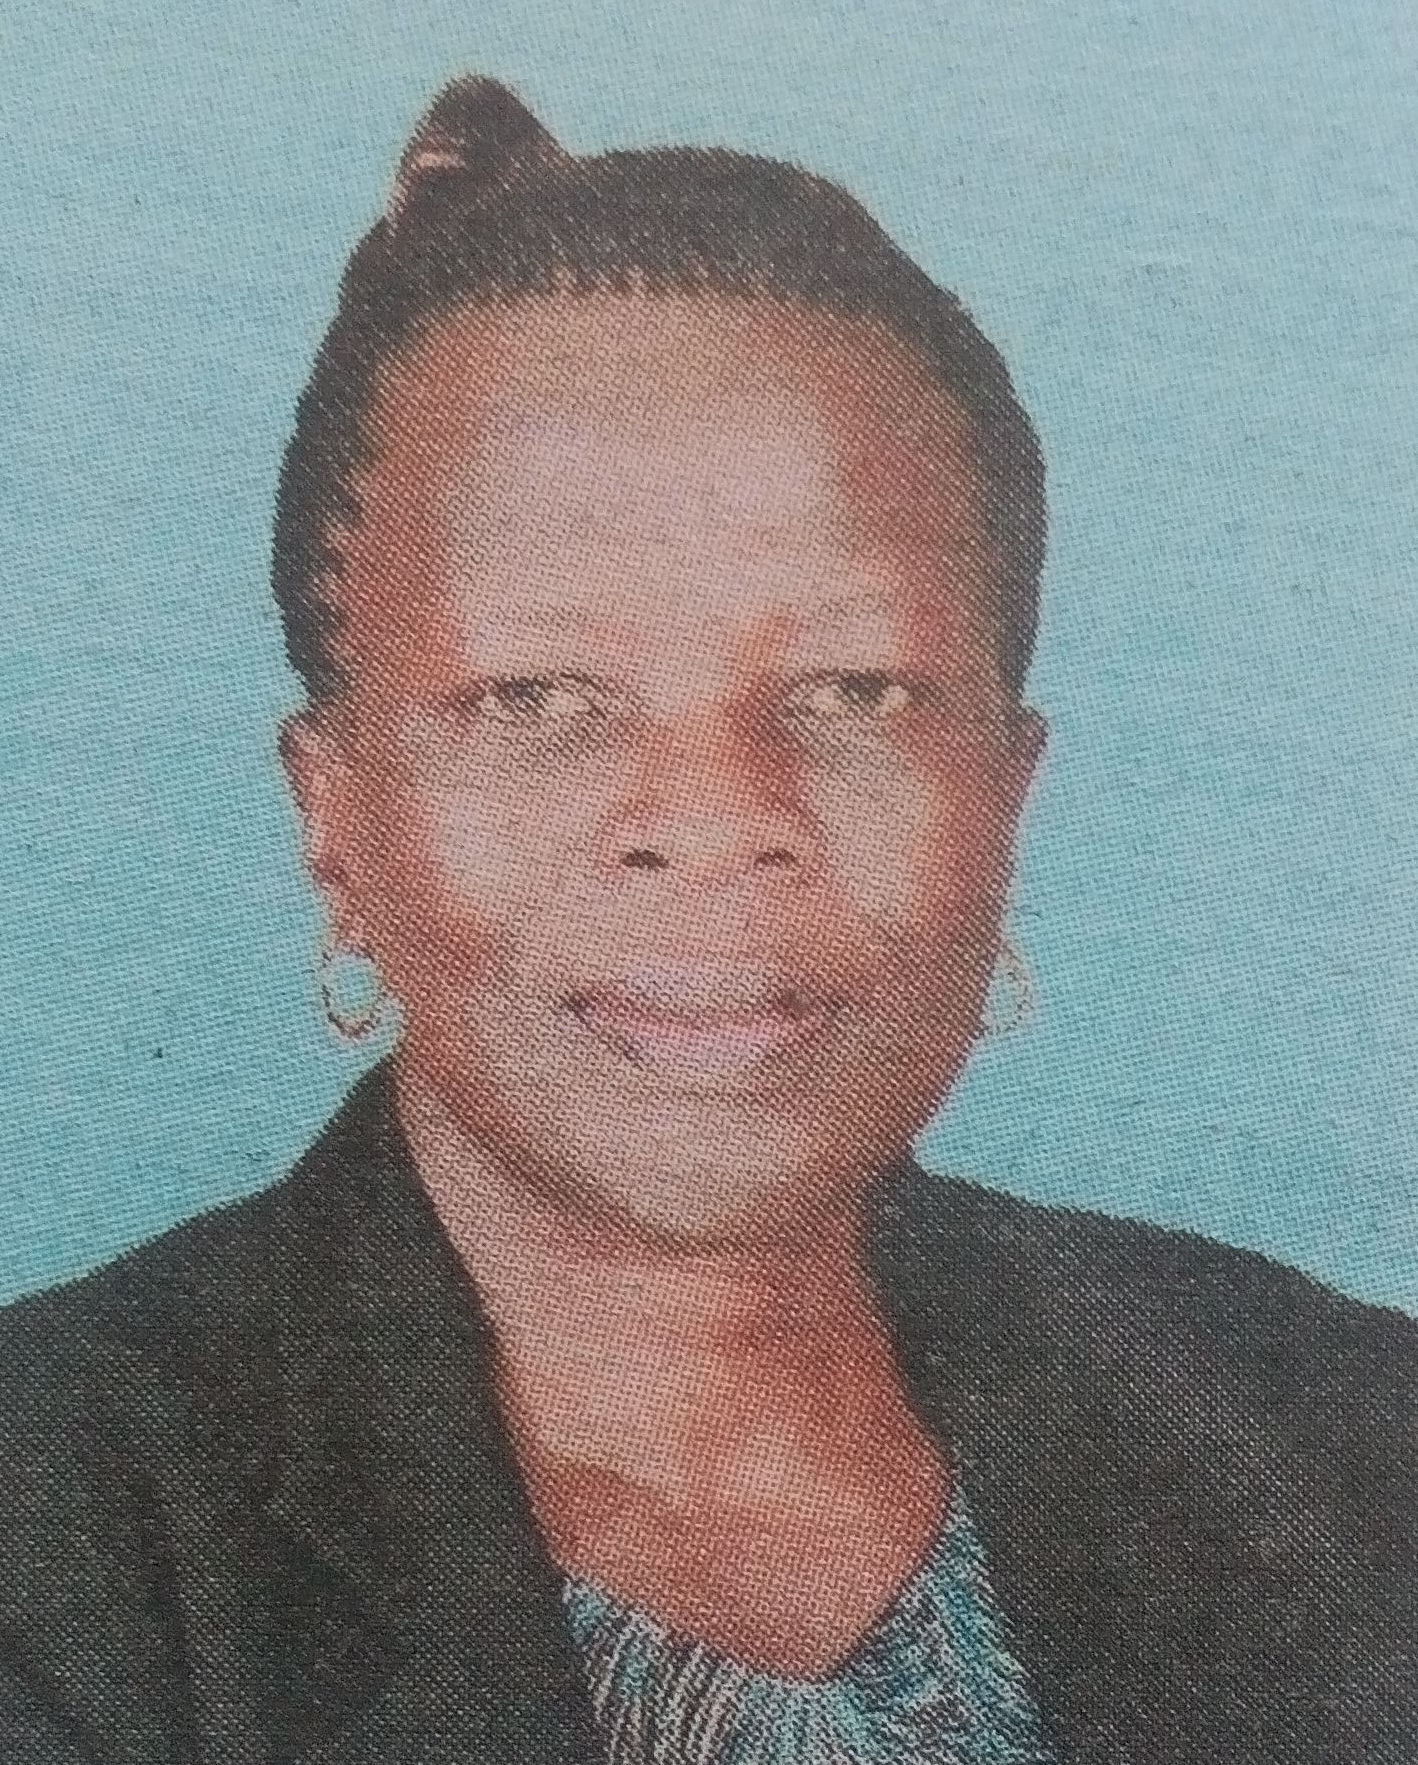 Obituary Image of Elizabeth Susan Amoke